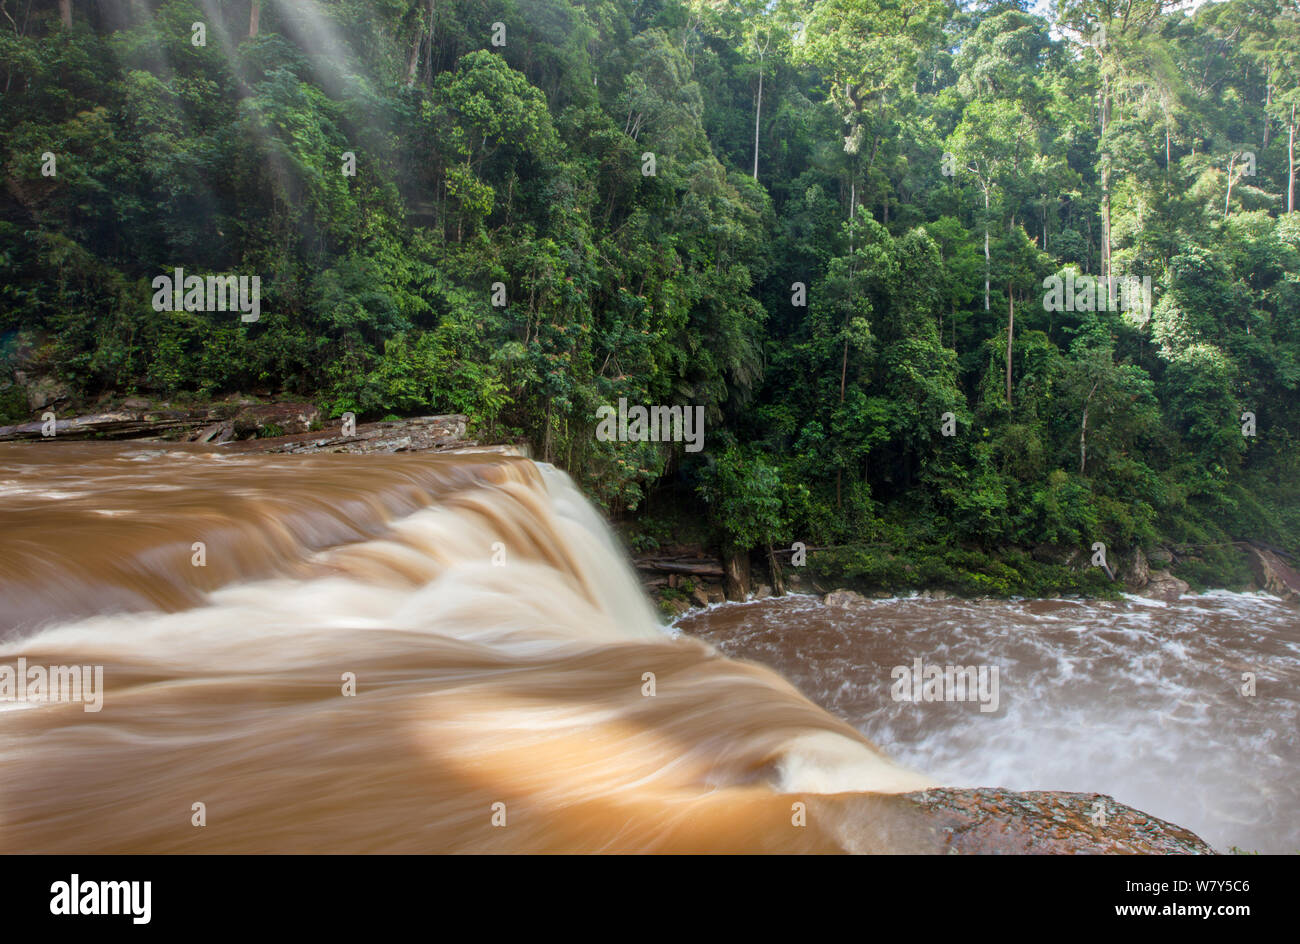 Maliau Falls on the Maliau River, Sabah, Borneo, May 2011. Stock Photo